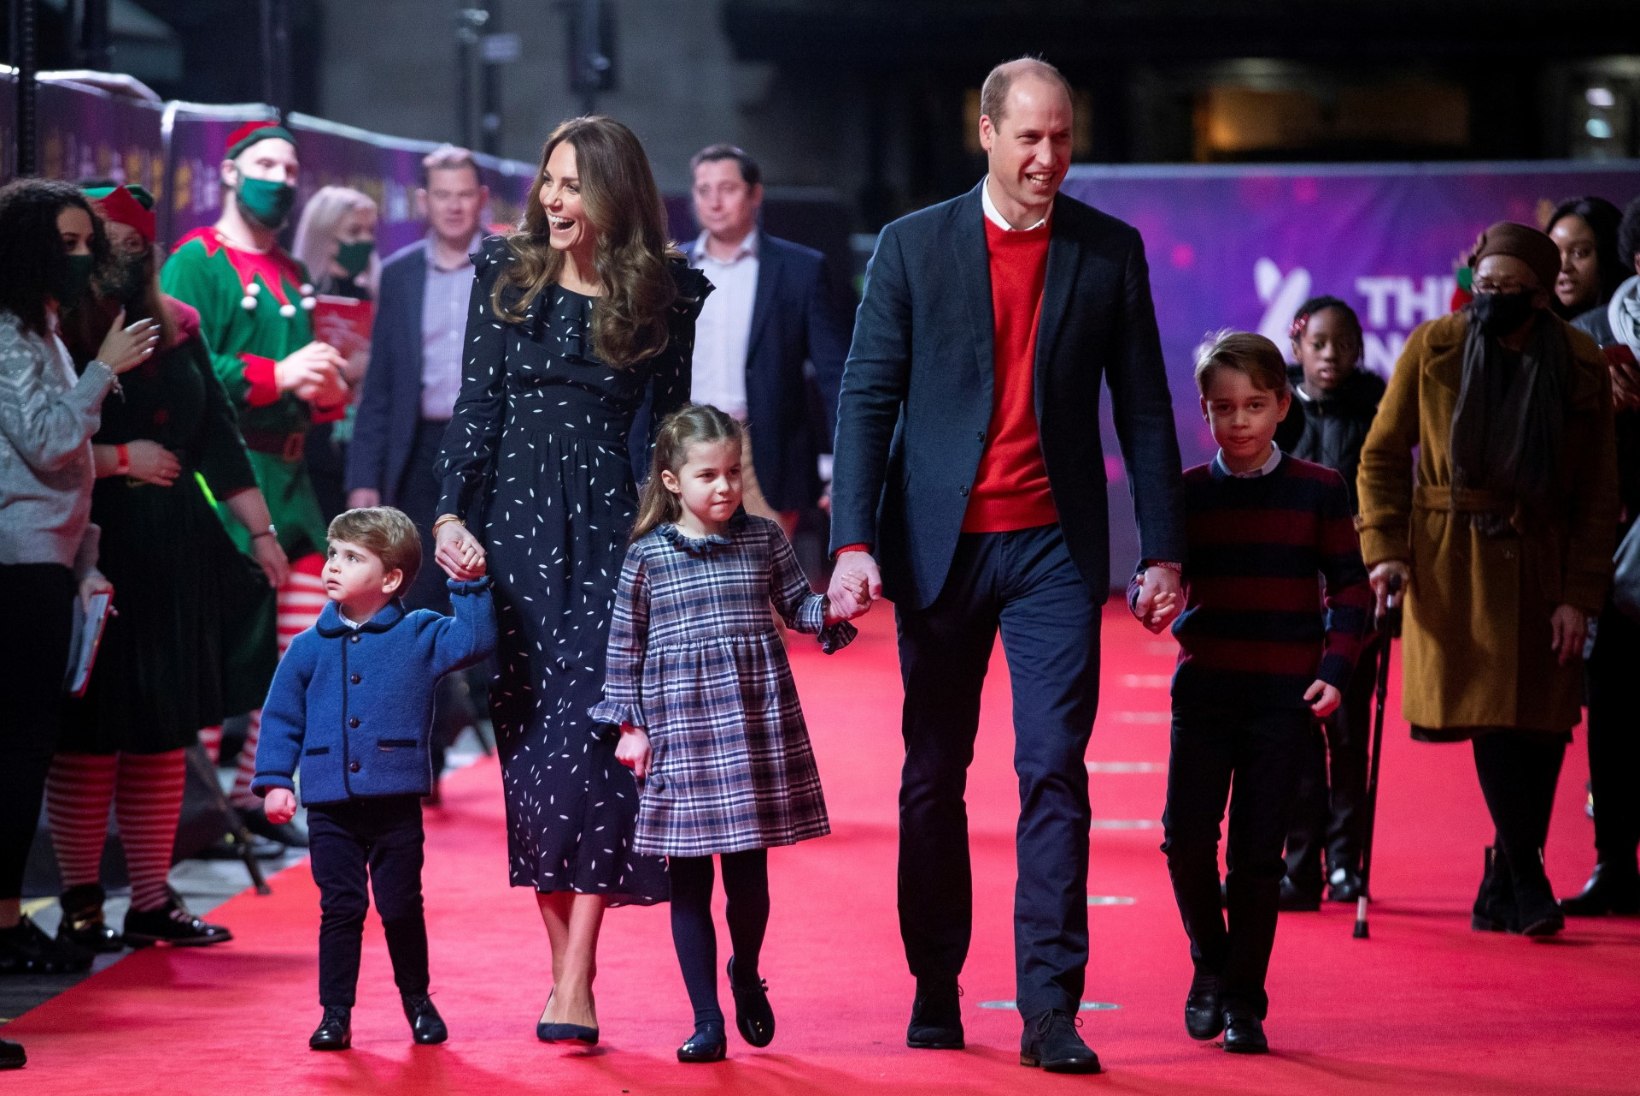 FOTOD | Terve pere koos! Prints William ja Kate tõid lapsed üle pika aja avalikkuse ette 